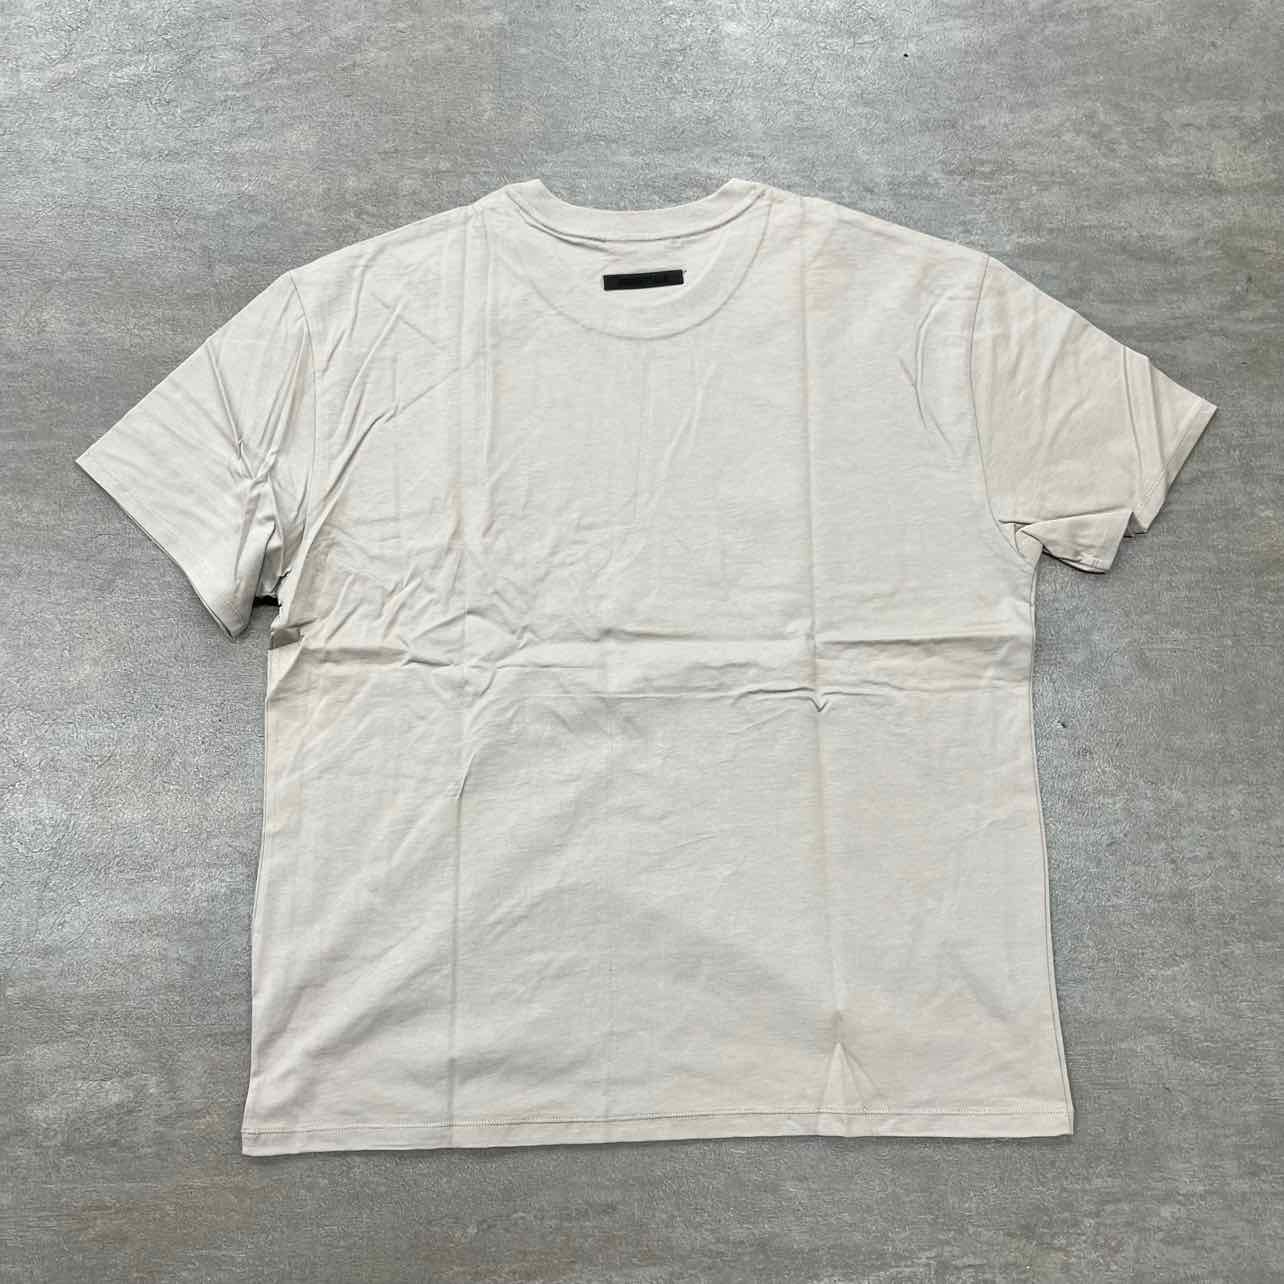 Fear of God T-Shirt &quot;ESSENTIALS&quot; Tan New Size 2XL